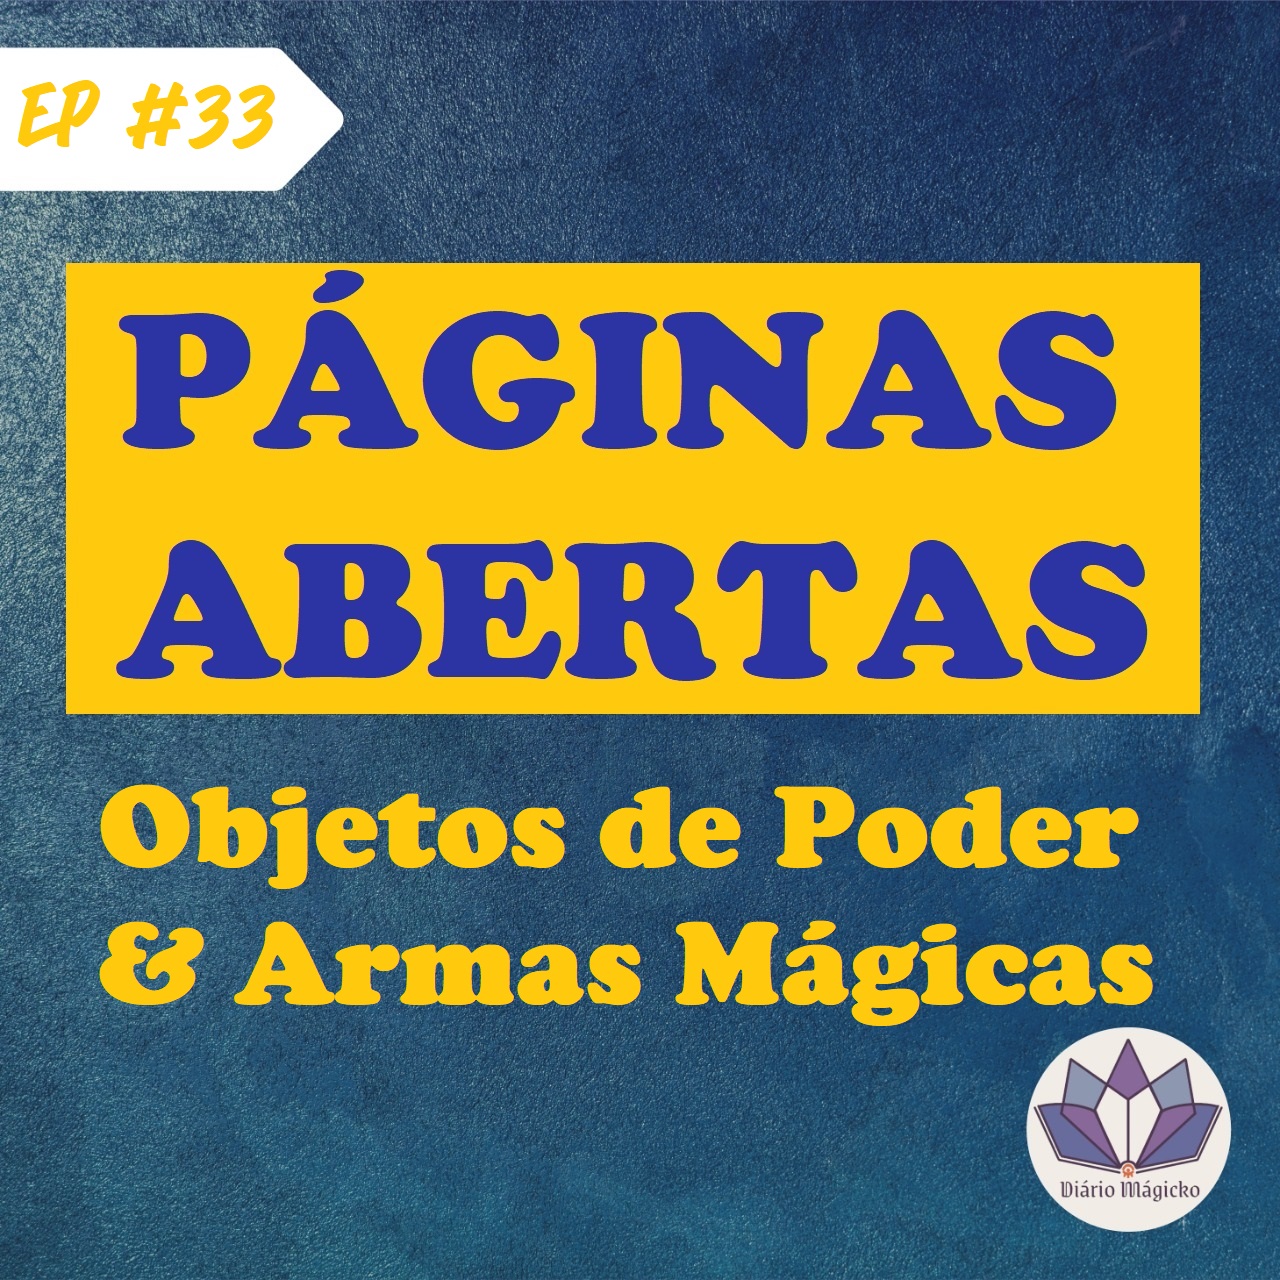 PA #33 – Objetos de Poder & Armas Mágicas